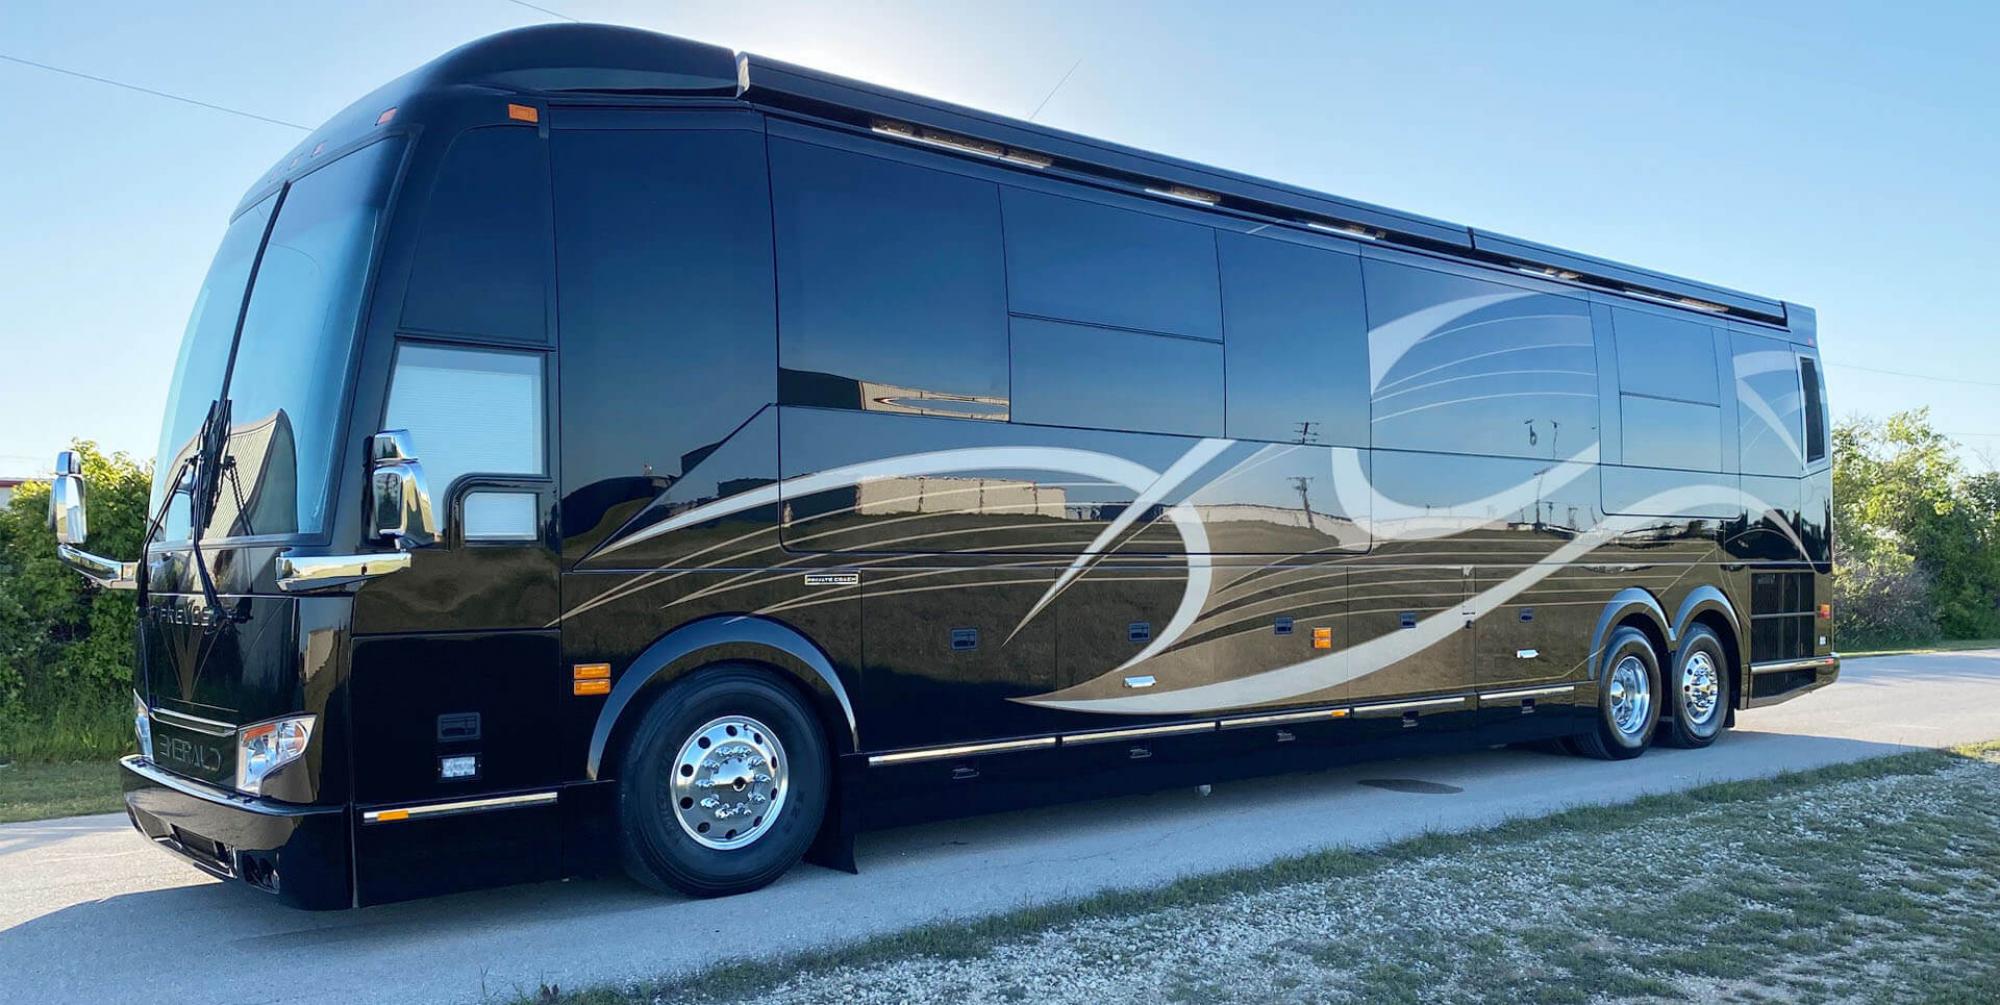 An exterior shot of an Emerald Luxury Coach RV